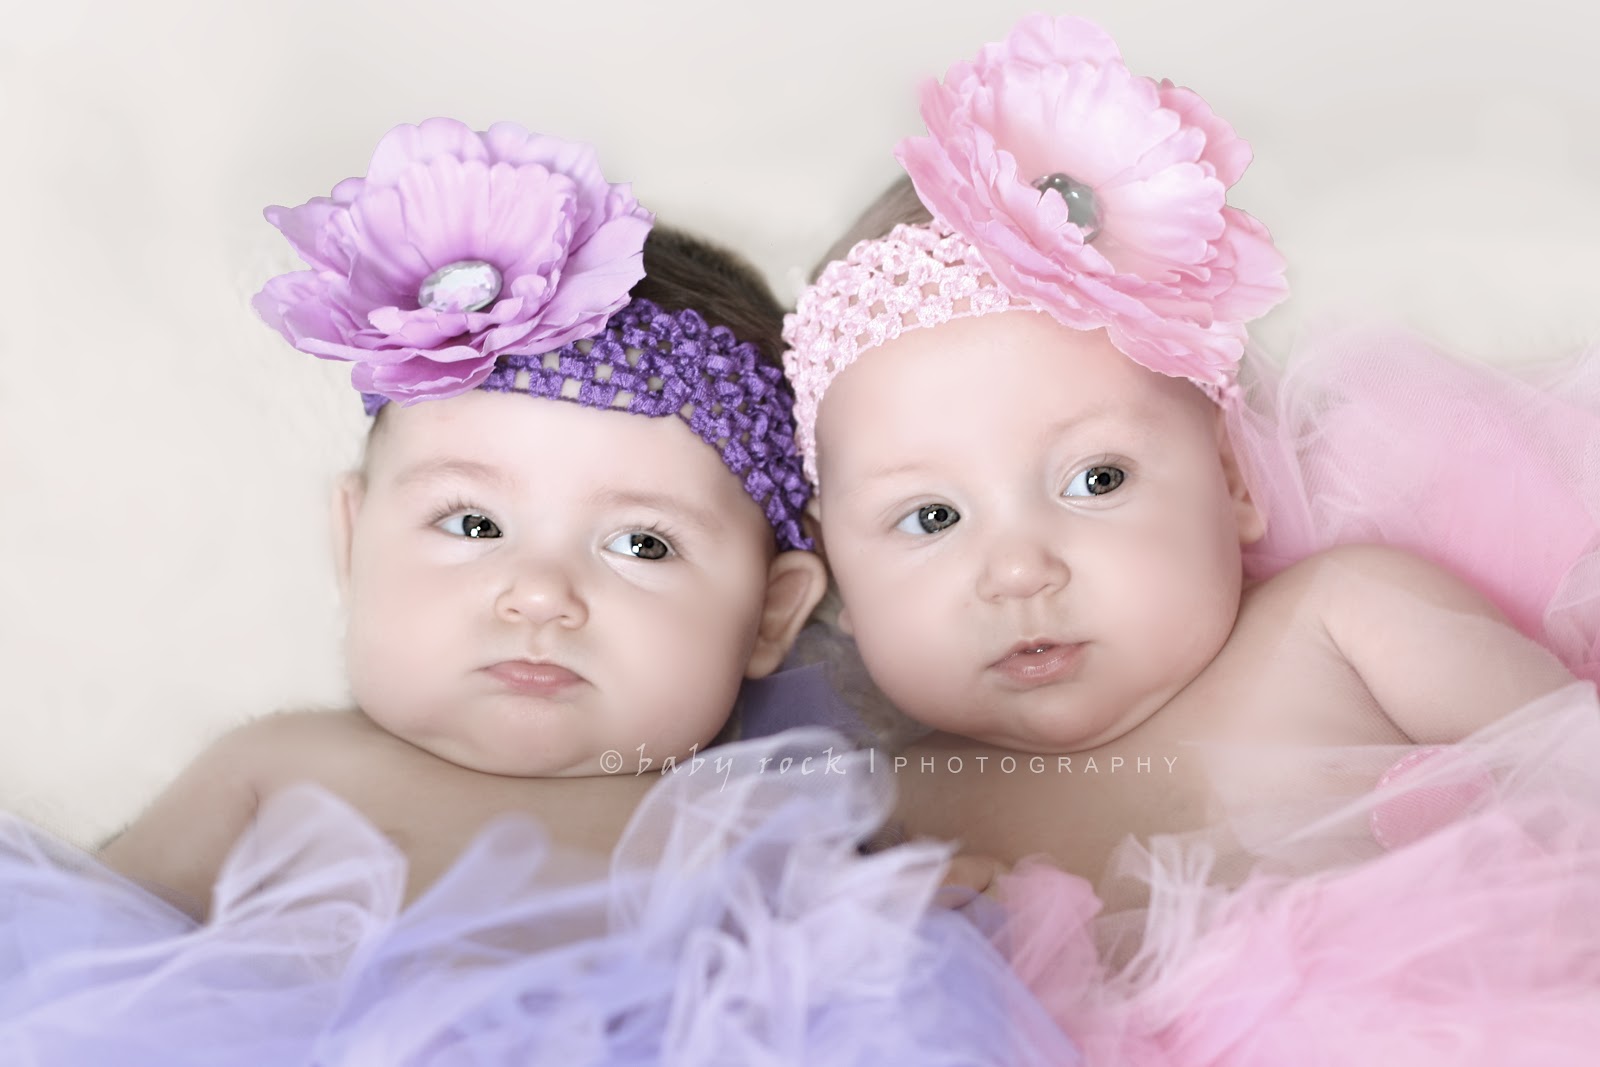 Foto Bayi Kembar Unyu Unyu Bangetz